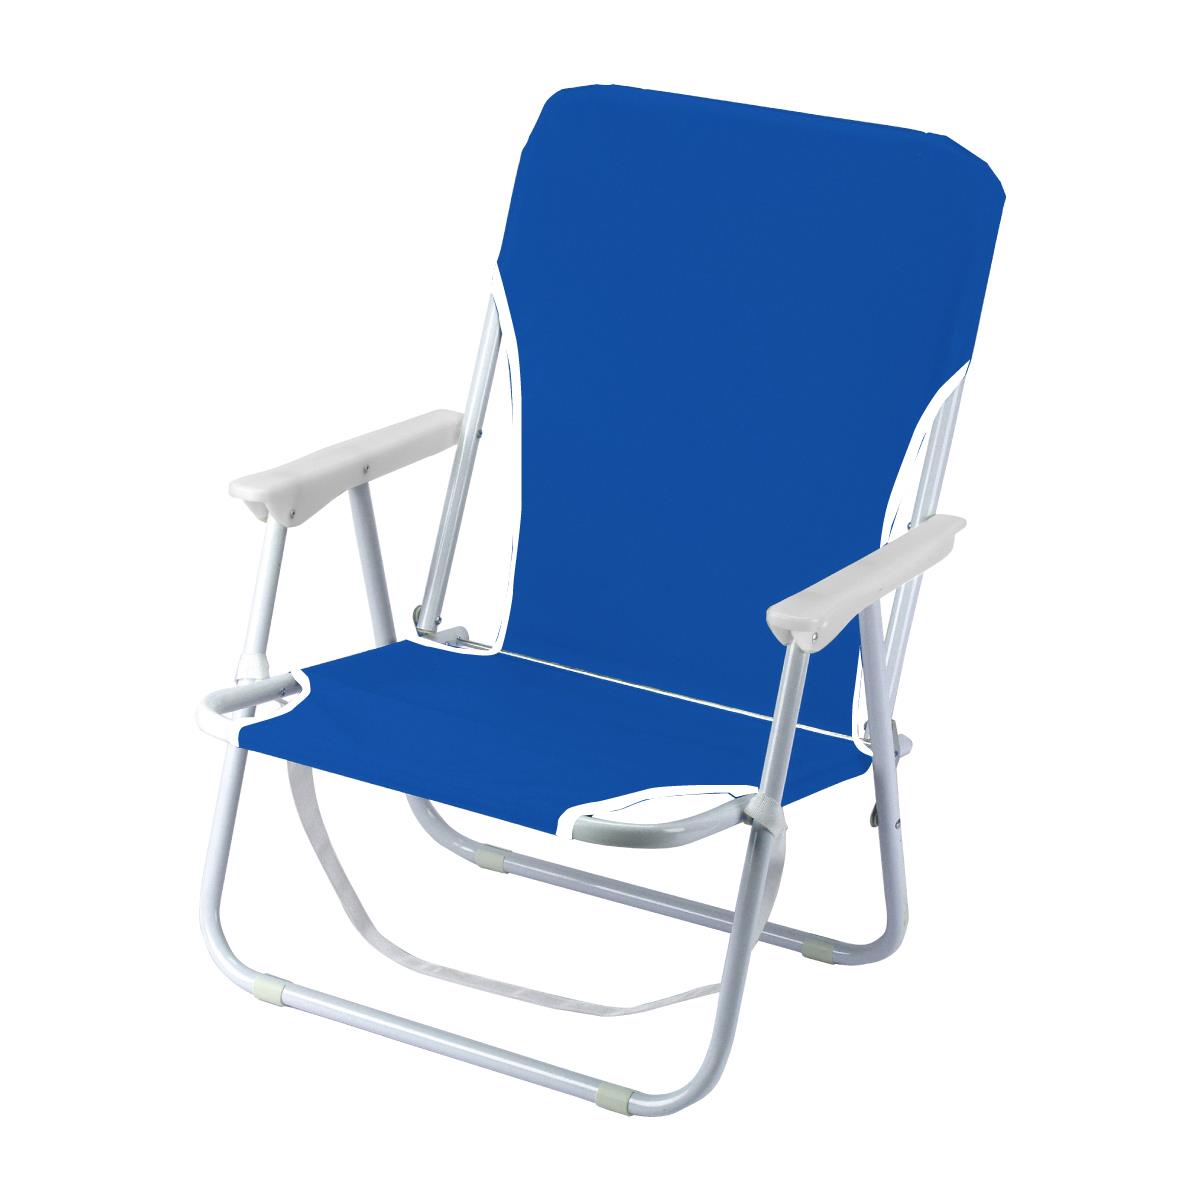 כיסא חוף ממותג, כיסא חוף במיתוג אישי, כיסא חוף, כיסא לים, כיסא לים עם מיתוג, כיסא לים במיתוג אישי 